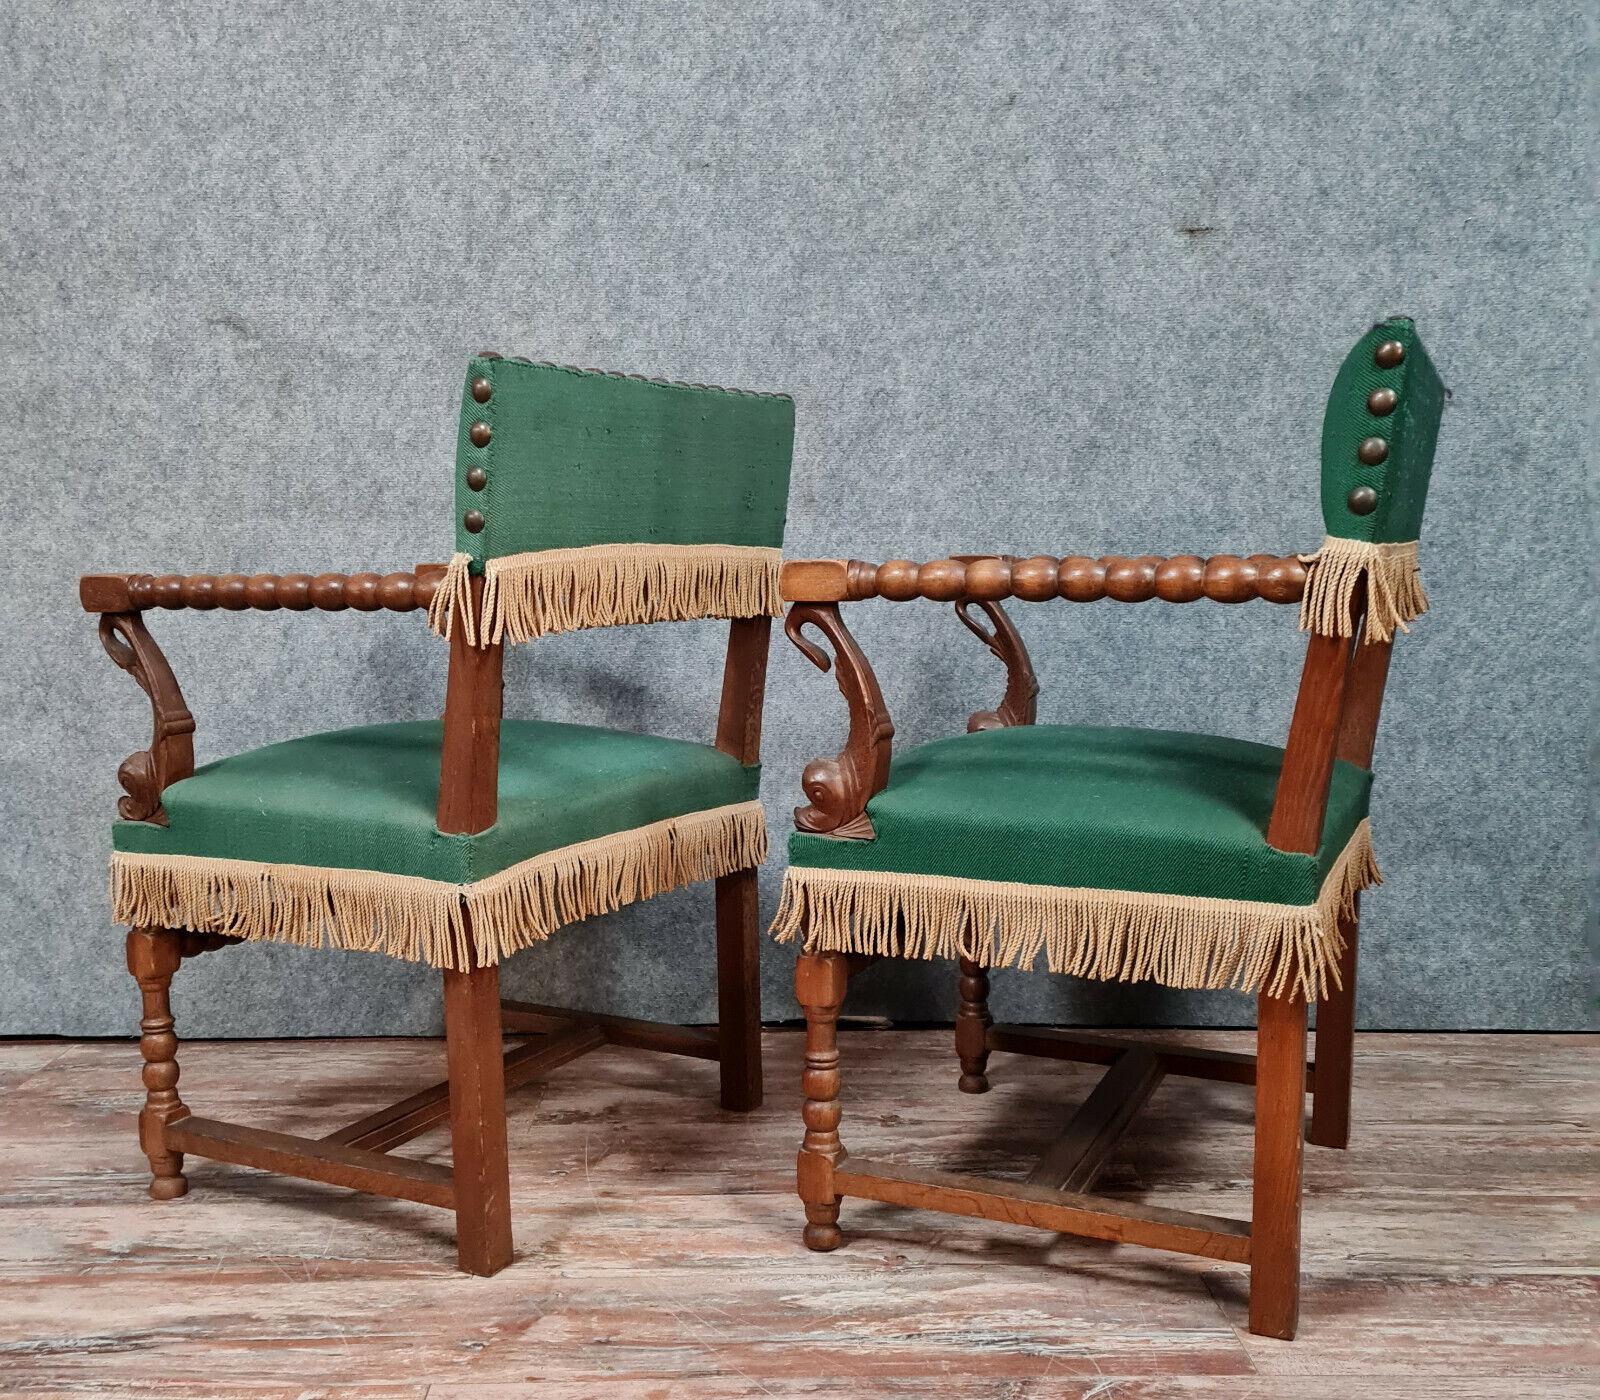 Tauchen Sie ein in die Opulenz des 19. Jahrhunderts mit diesem bemerkenswerten Paar Louis XIII-Sessel. Diese aus massiver Eiche gefertigten Stühle strahlen zeitlose Eleganz und Grandeur aus.

Der an rustikales Sackleinen erinnernde Stoff mit